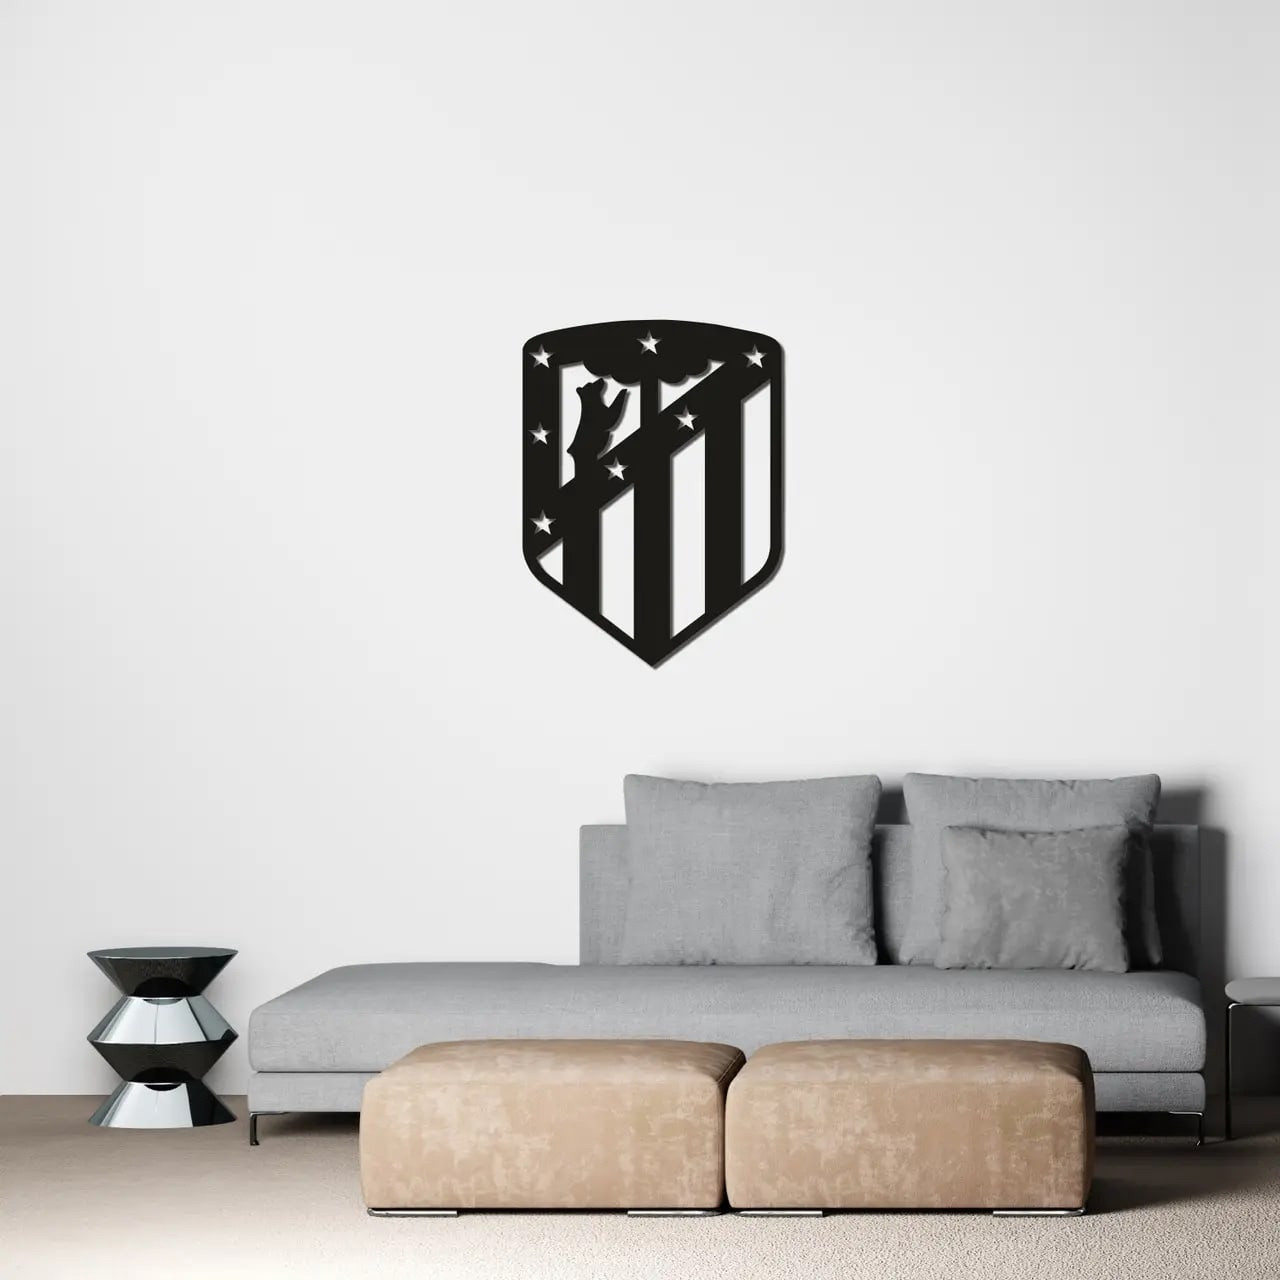 Эмблема футбольного клуба Атлетико Мадрид (40*30 см)